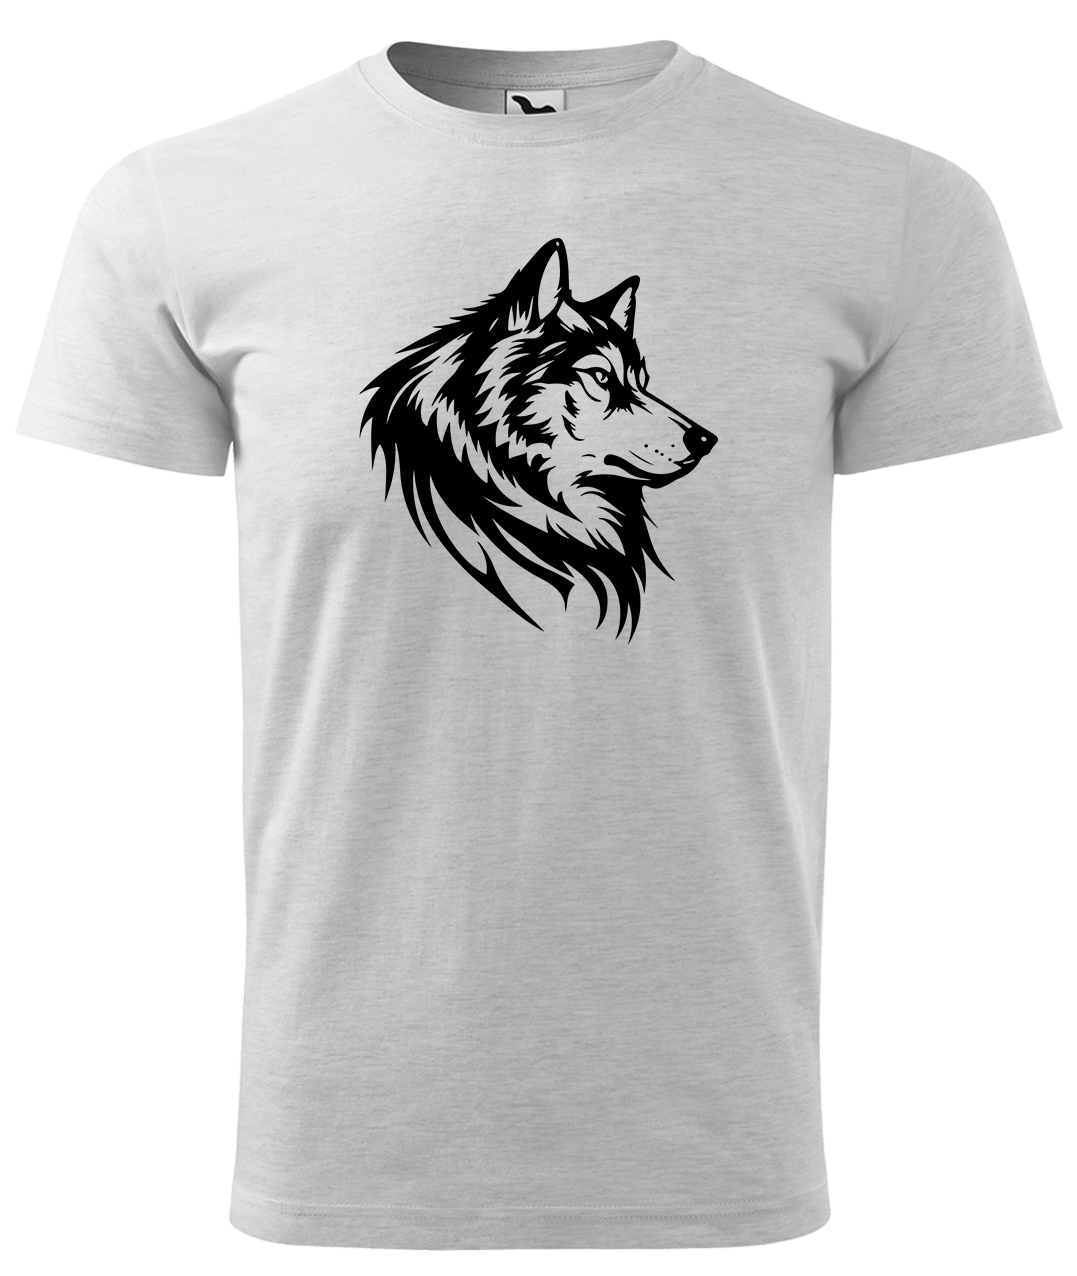 Dětské tričko s vlkem - Wolf Velikost: 4 roky / 110 cm, Barva: Světle šedý melír (03), Délka rukávu: Krátký rukáv